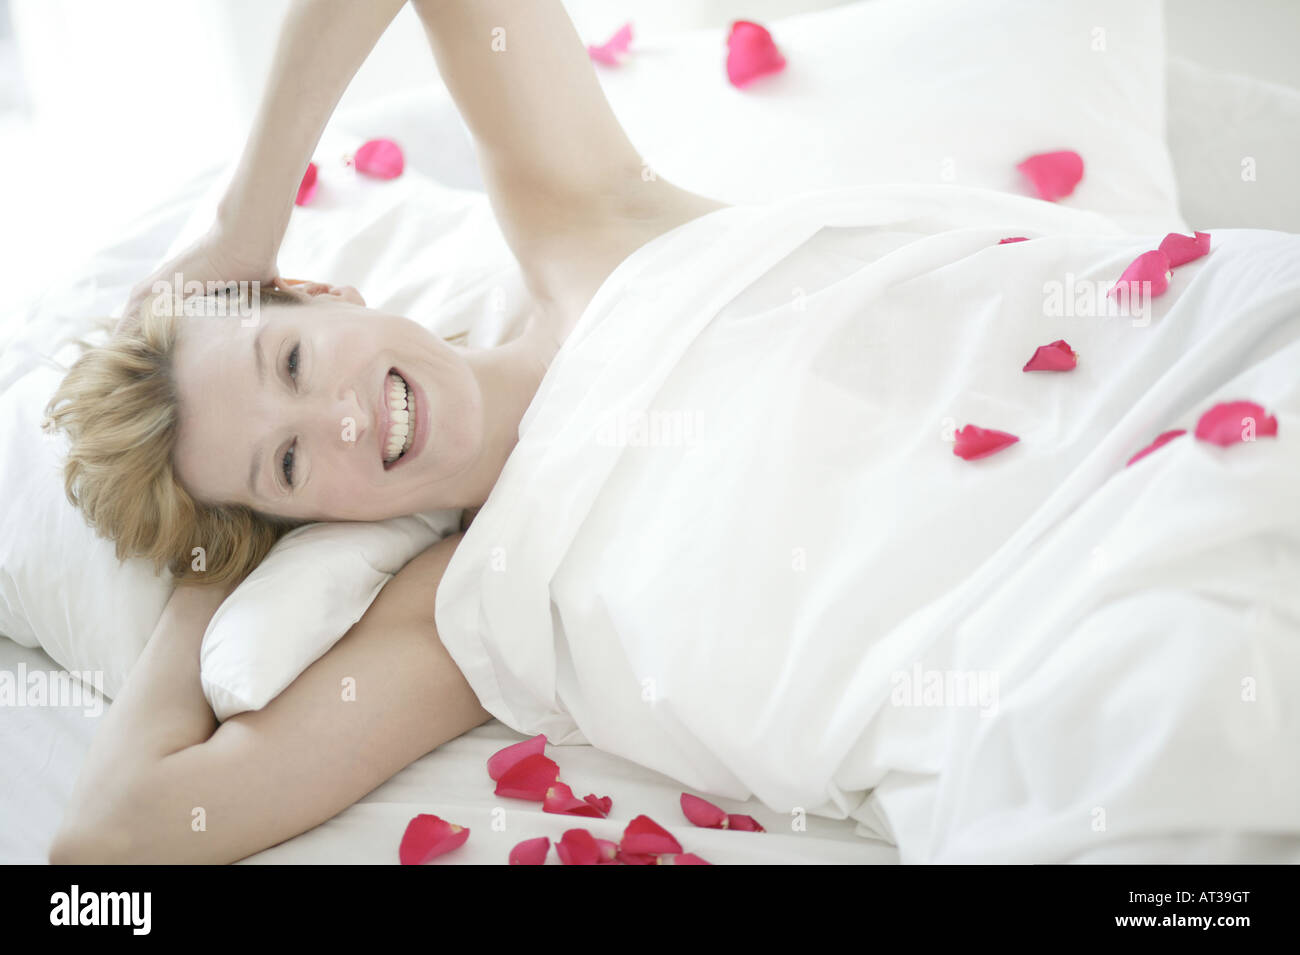 A woman Lying in Bed smiling, des pétales de rose éparpillés sur le lit Banque D'Images